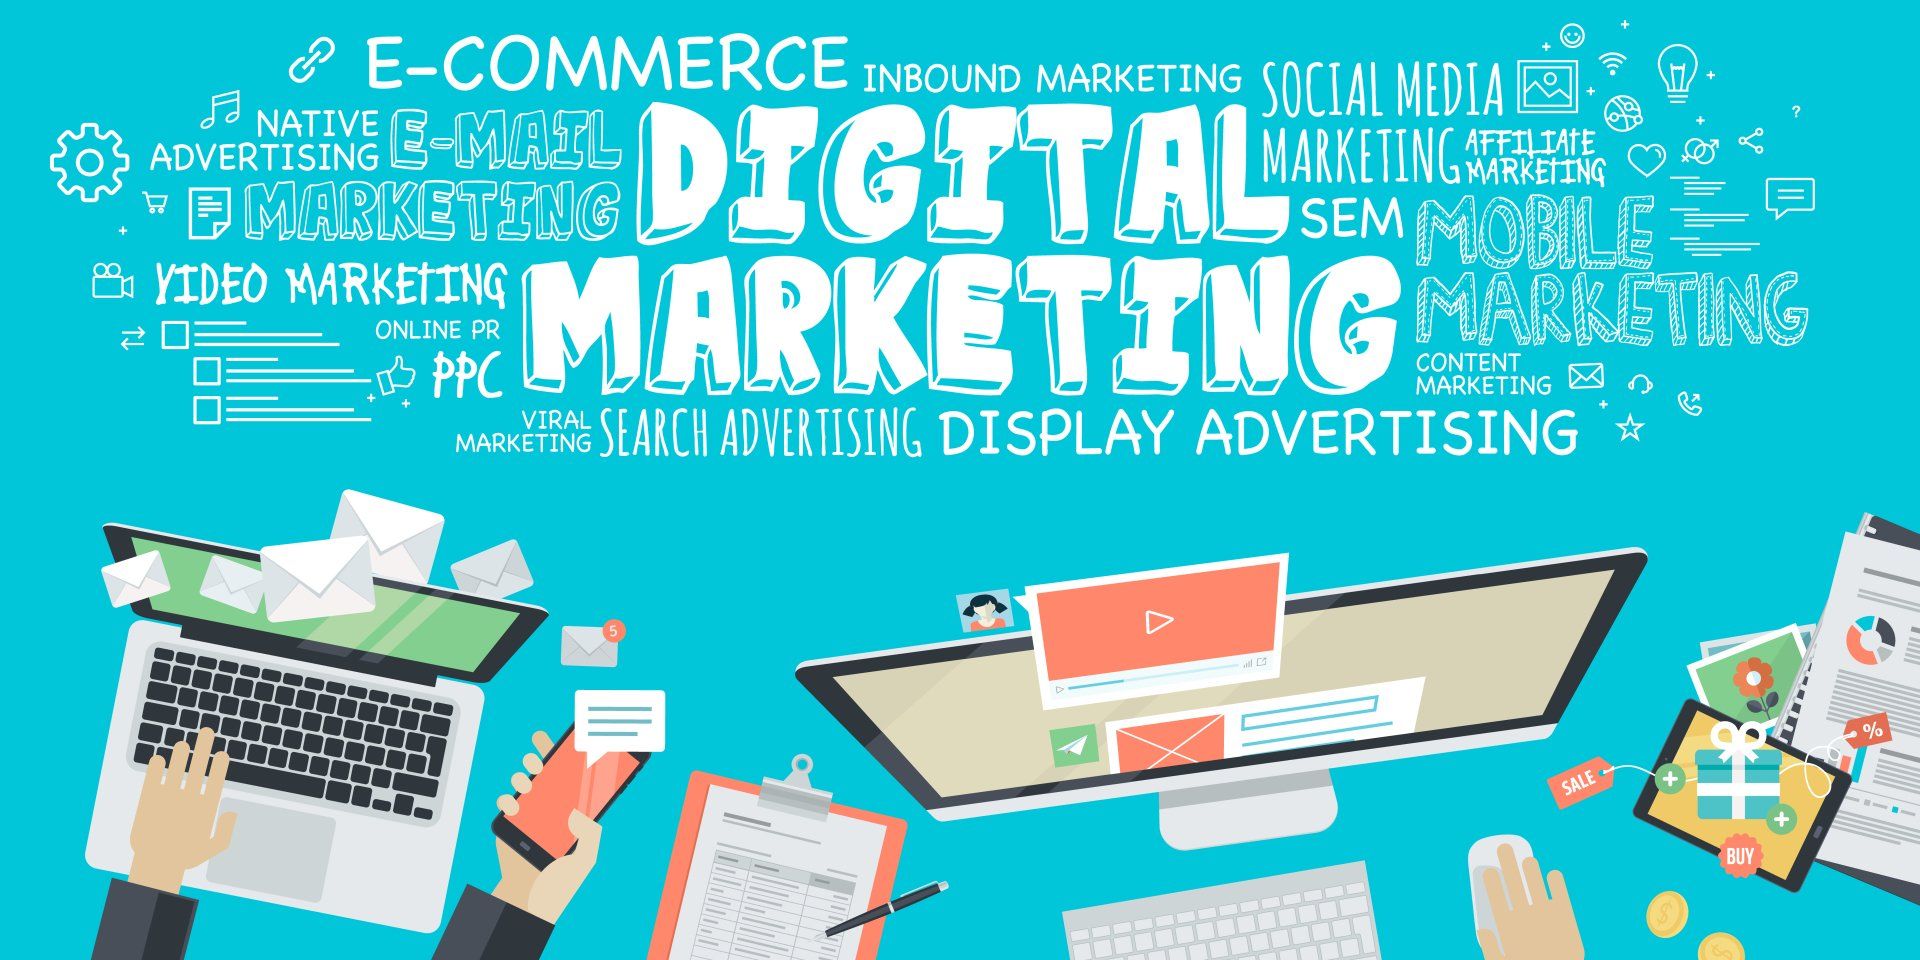 Illustration of Digital Marketing